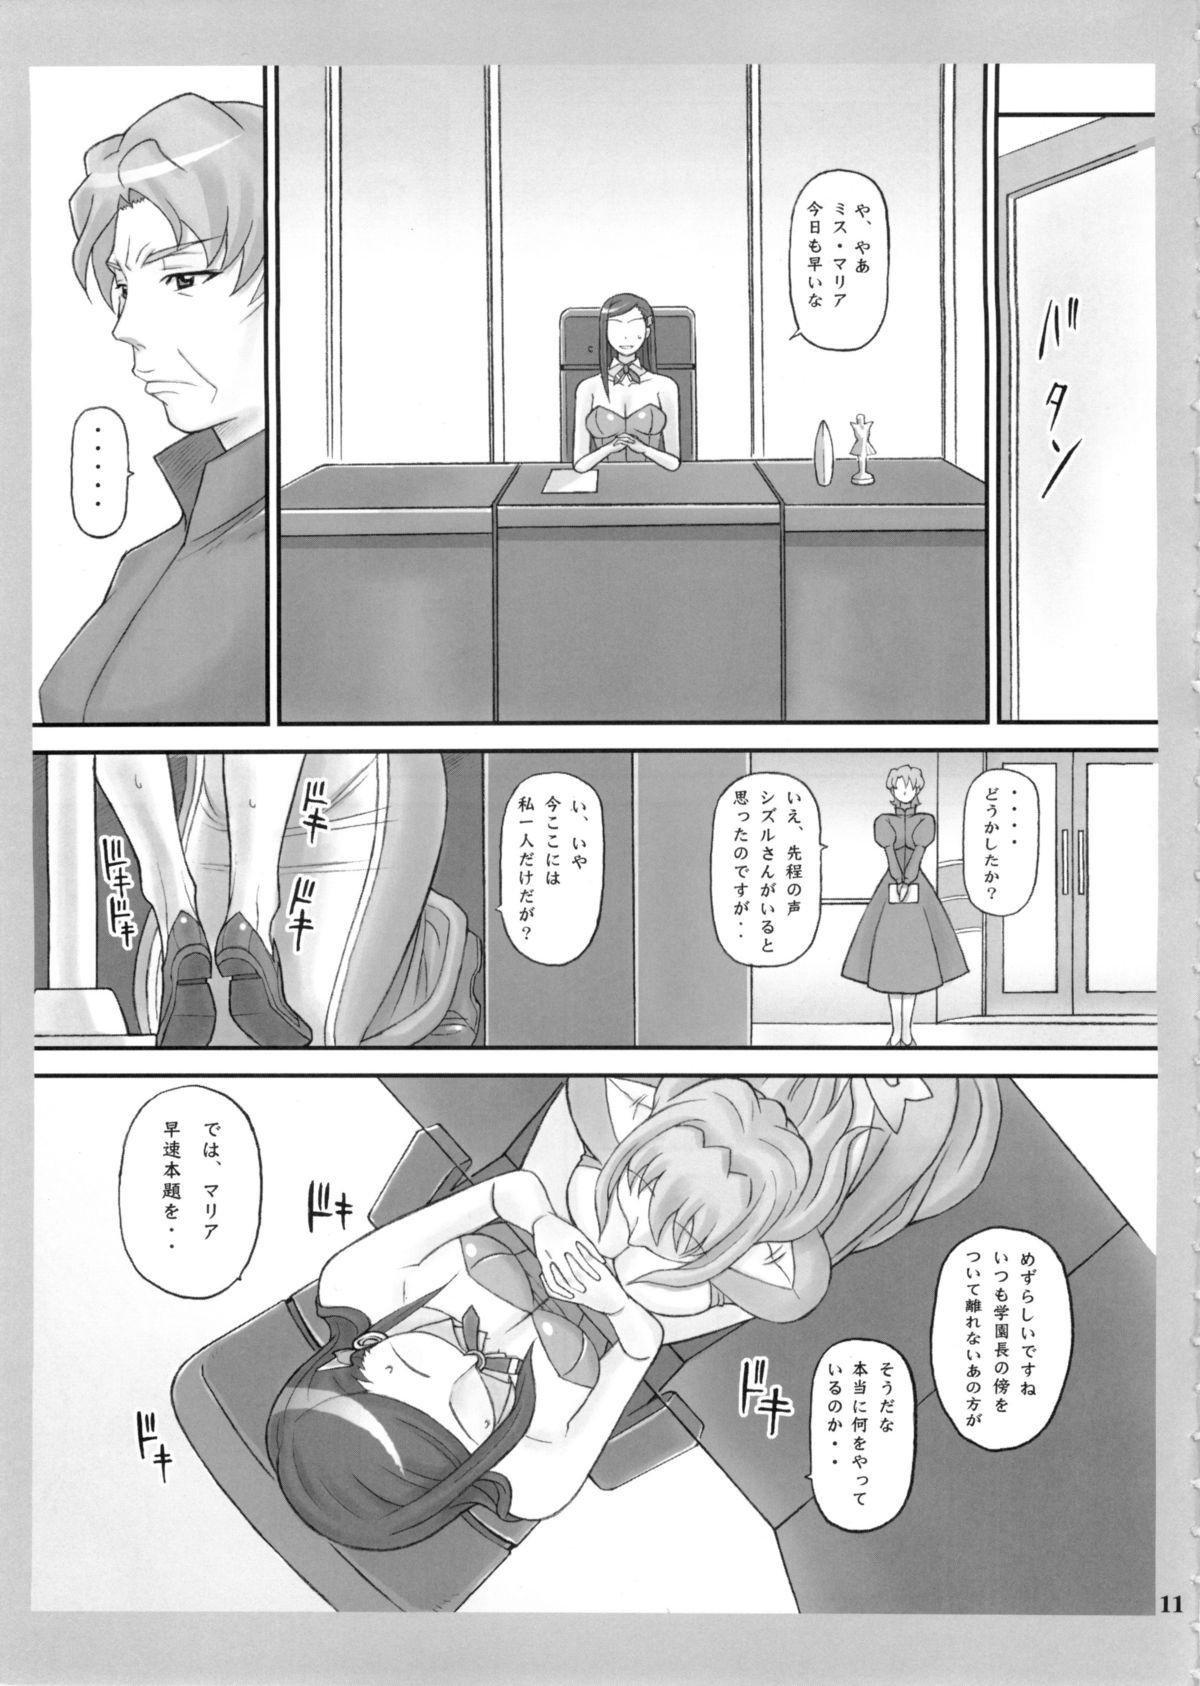 Perfect Natsukuru - Mai-otome POV - Page 11